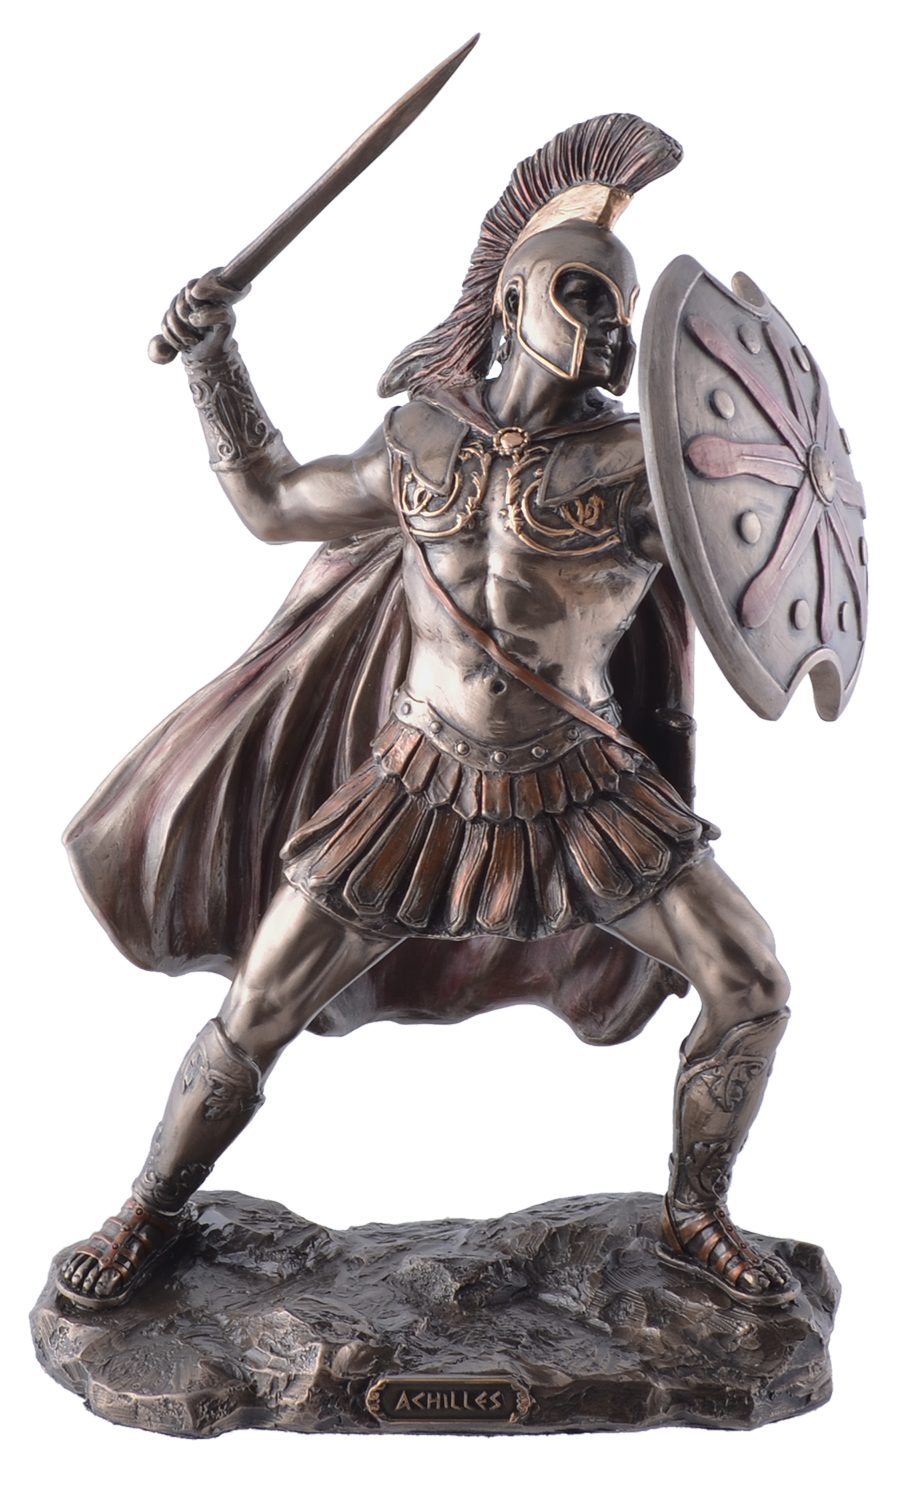 Vogler direct Gmbh Dekofigur Bronzierter Achilles, griechischer Krieger in Troja, von Hand bronziert, LxBxH: 16x12x25cm